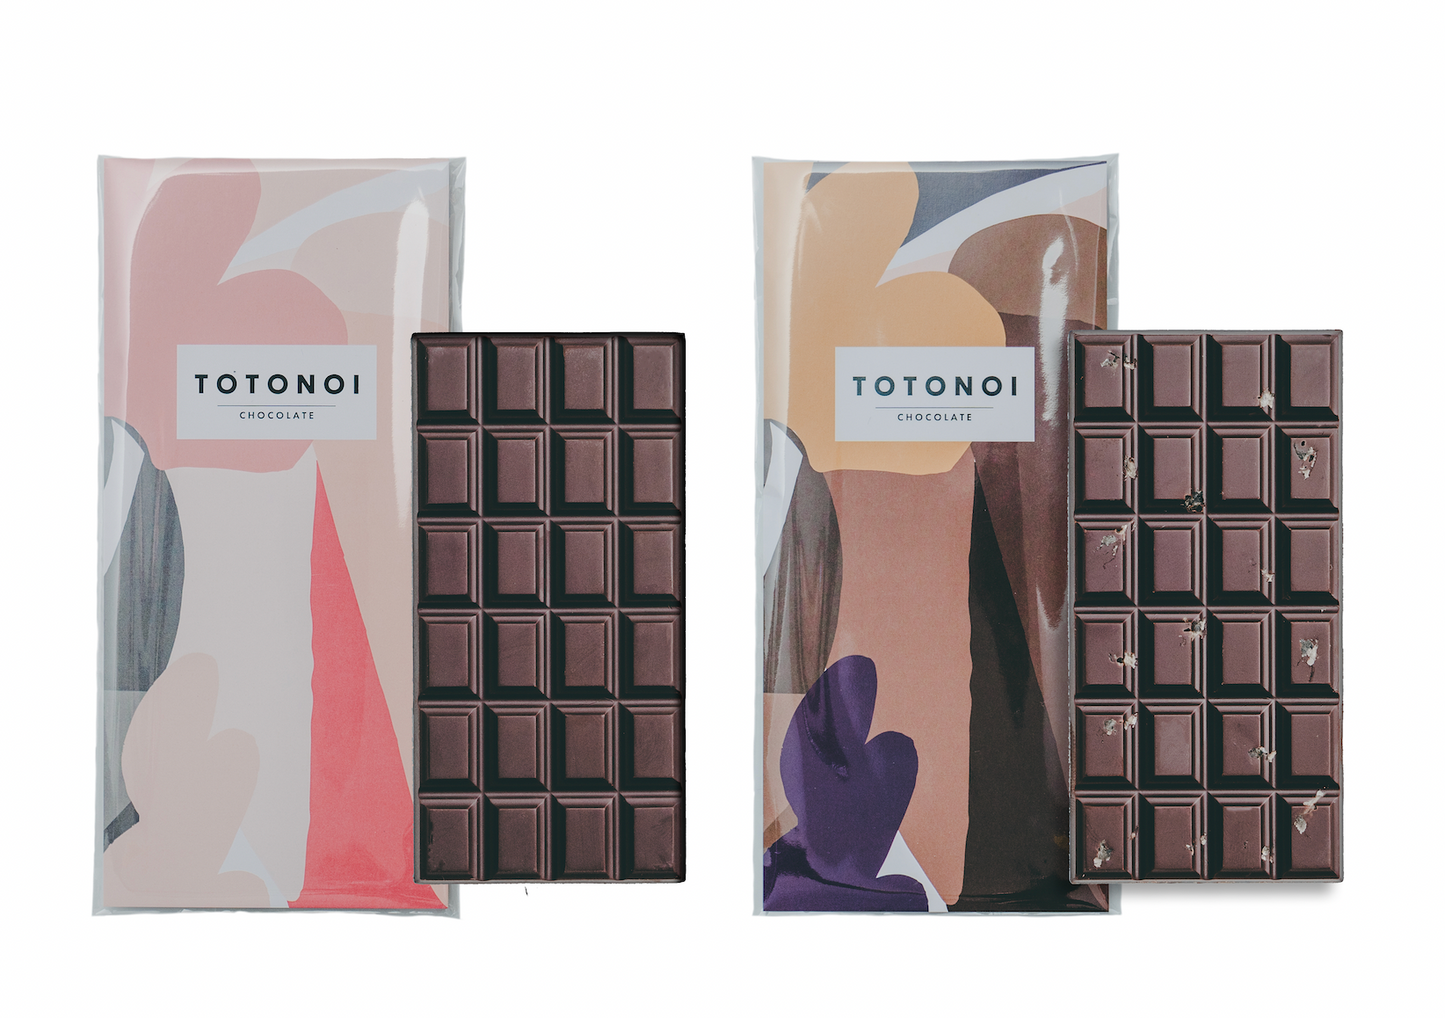 TOTONOIチョコレート２種類ミニバーの食べ比べセット